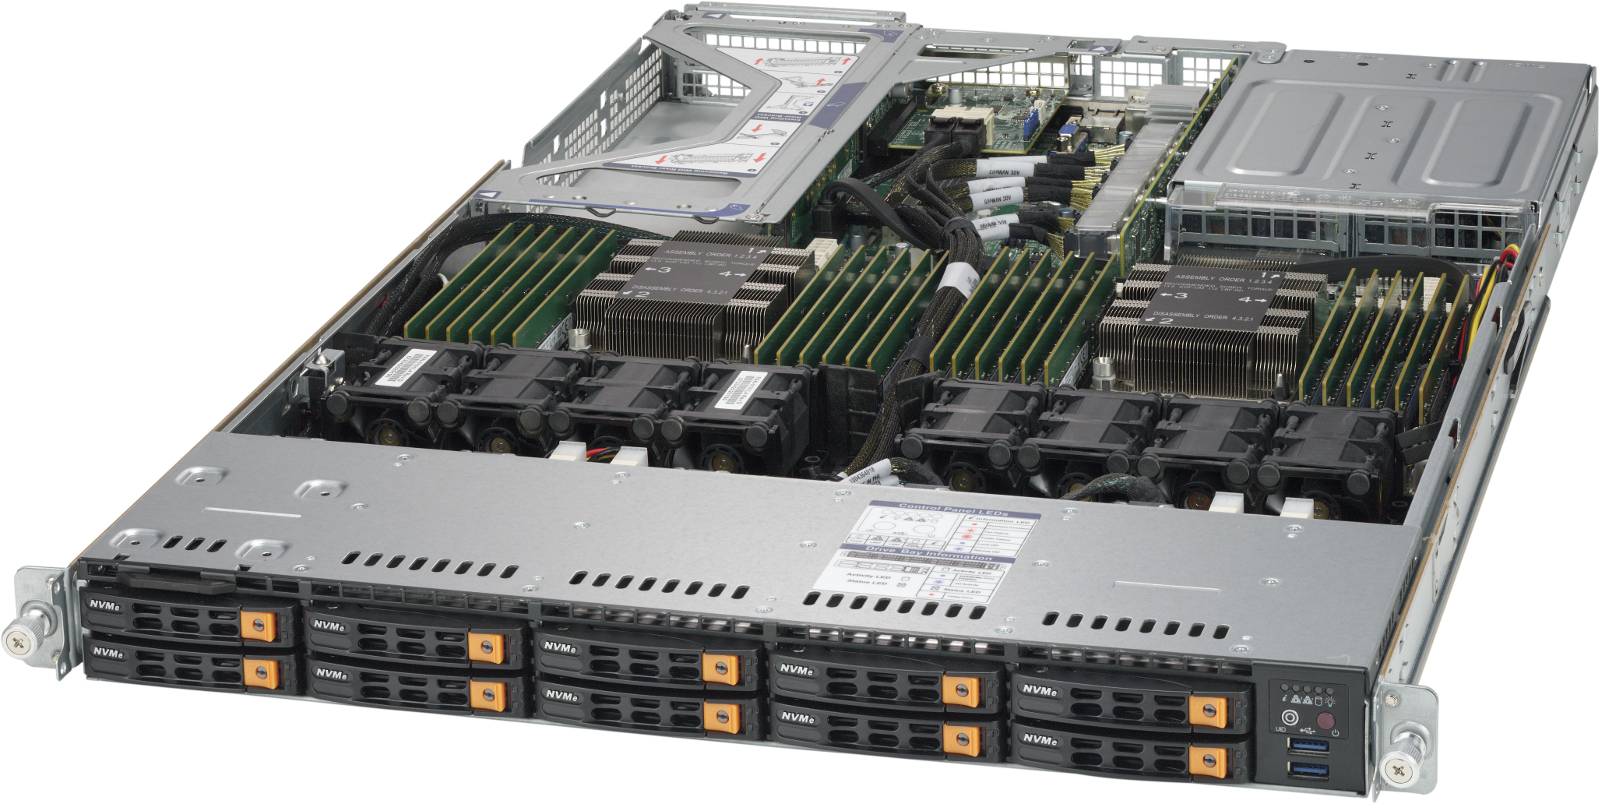 Review: Máy chủ Supermicro SuperServer với bộ nhớ dài hạn Intel Optane DC đầu tiên